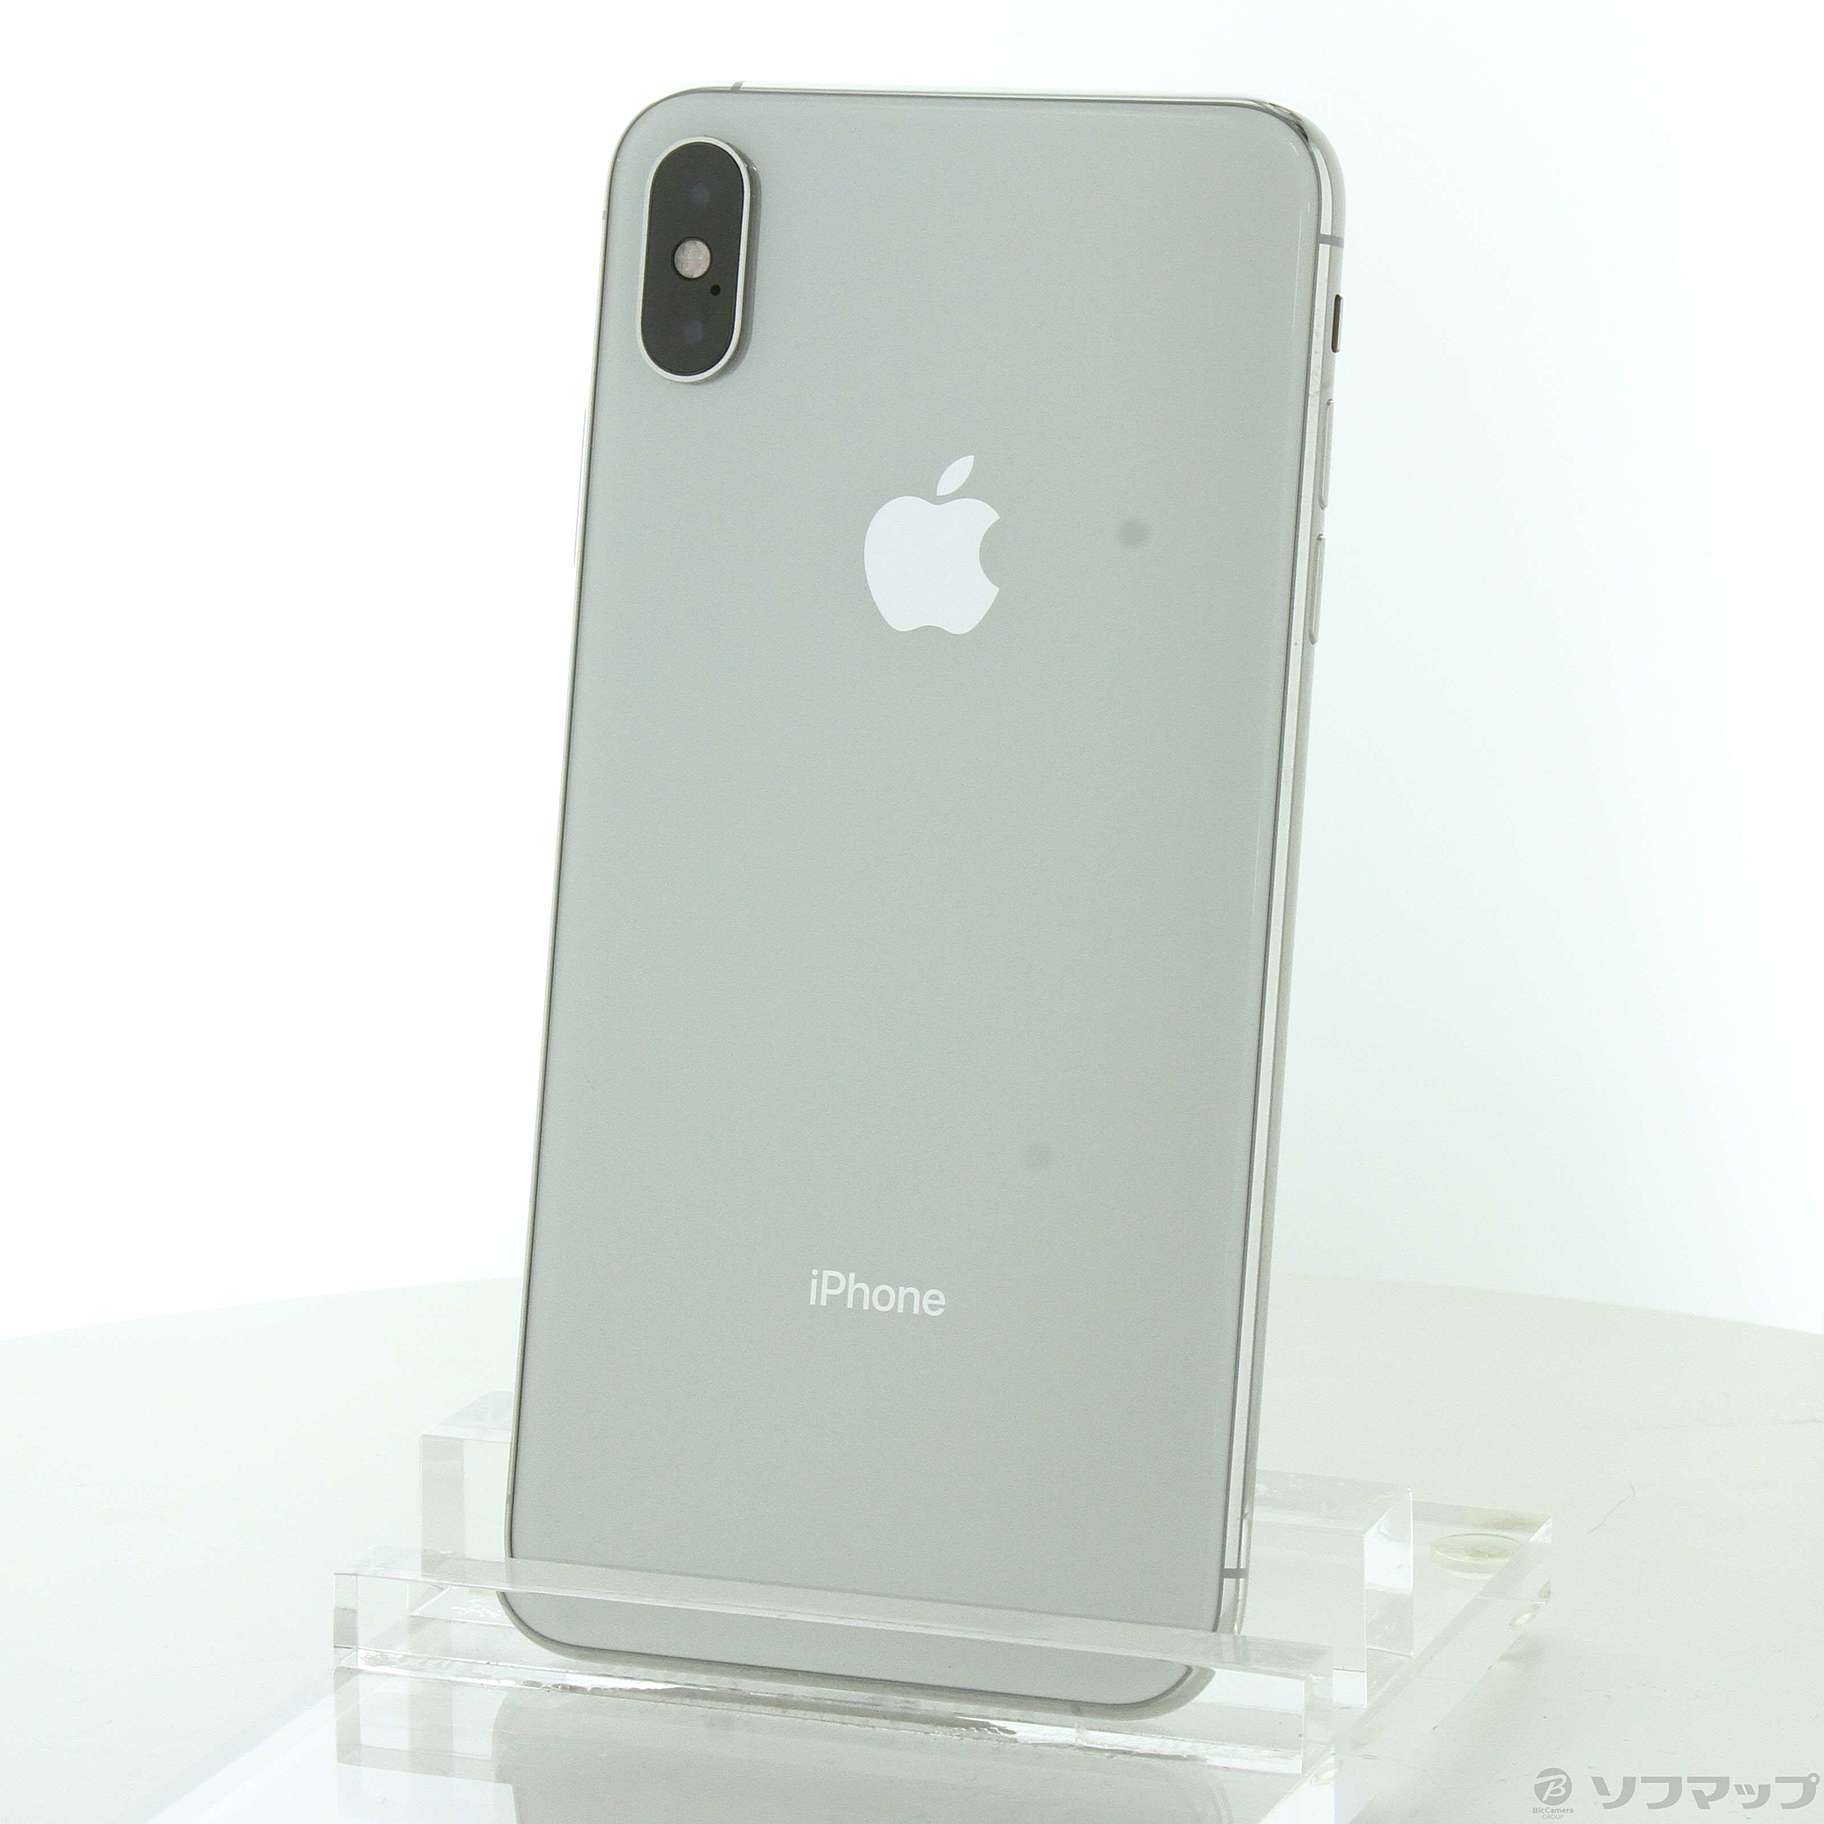 ナツ様専用 iPhone X Silver 256GB SIMフリー-